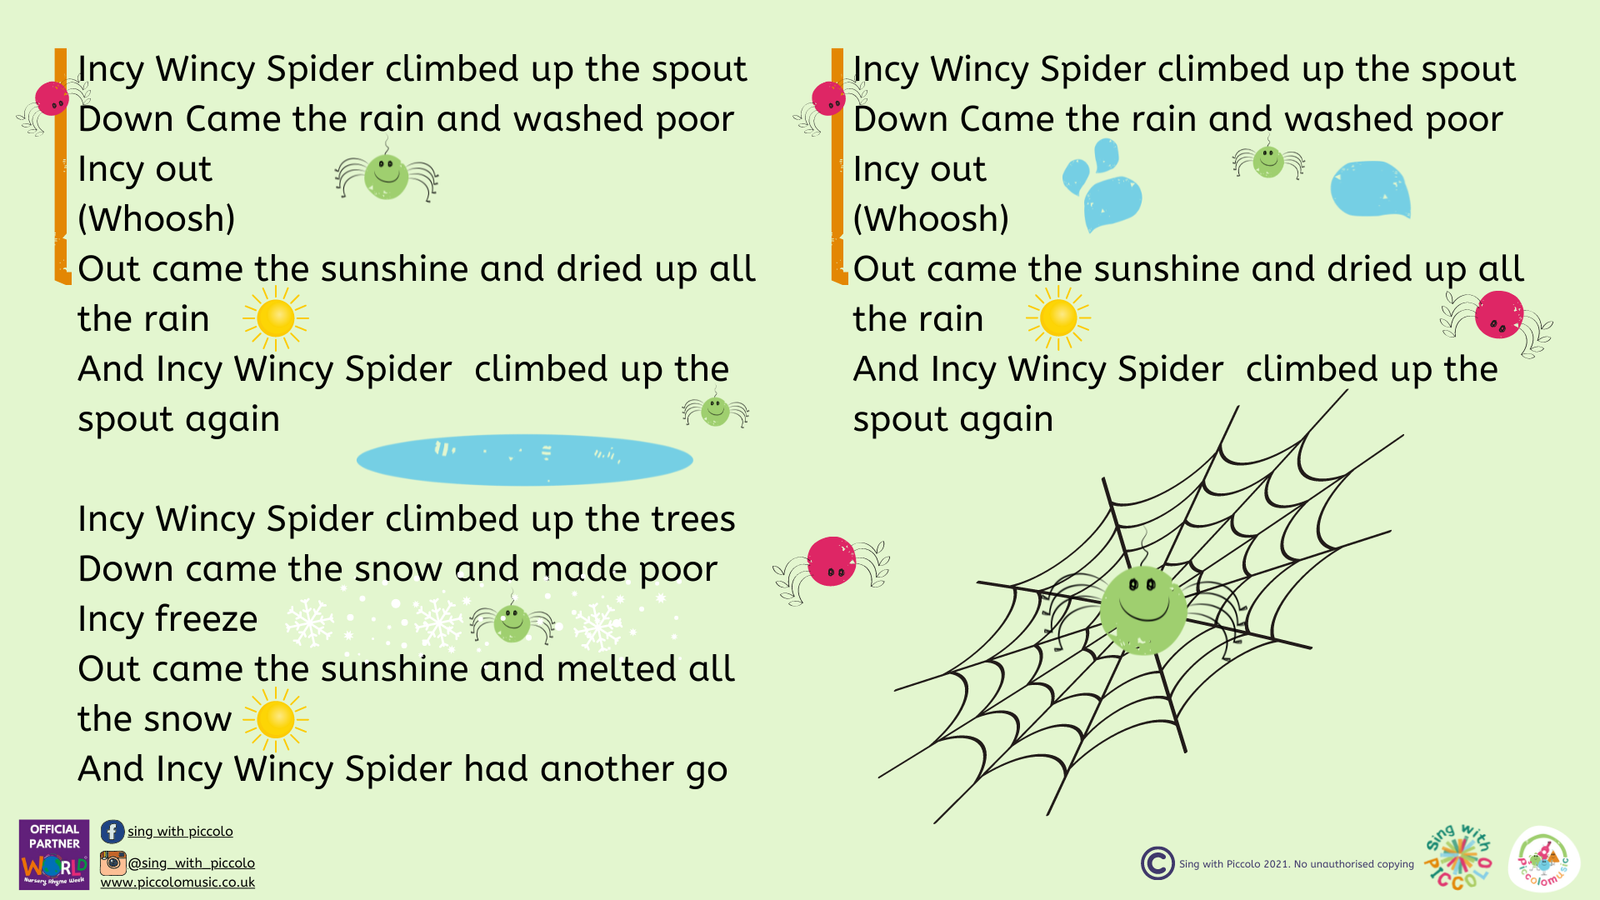 itsy bitsy spider  Nursery rhymes lyrics, Rhyming poems for kids